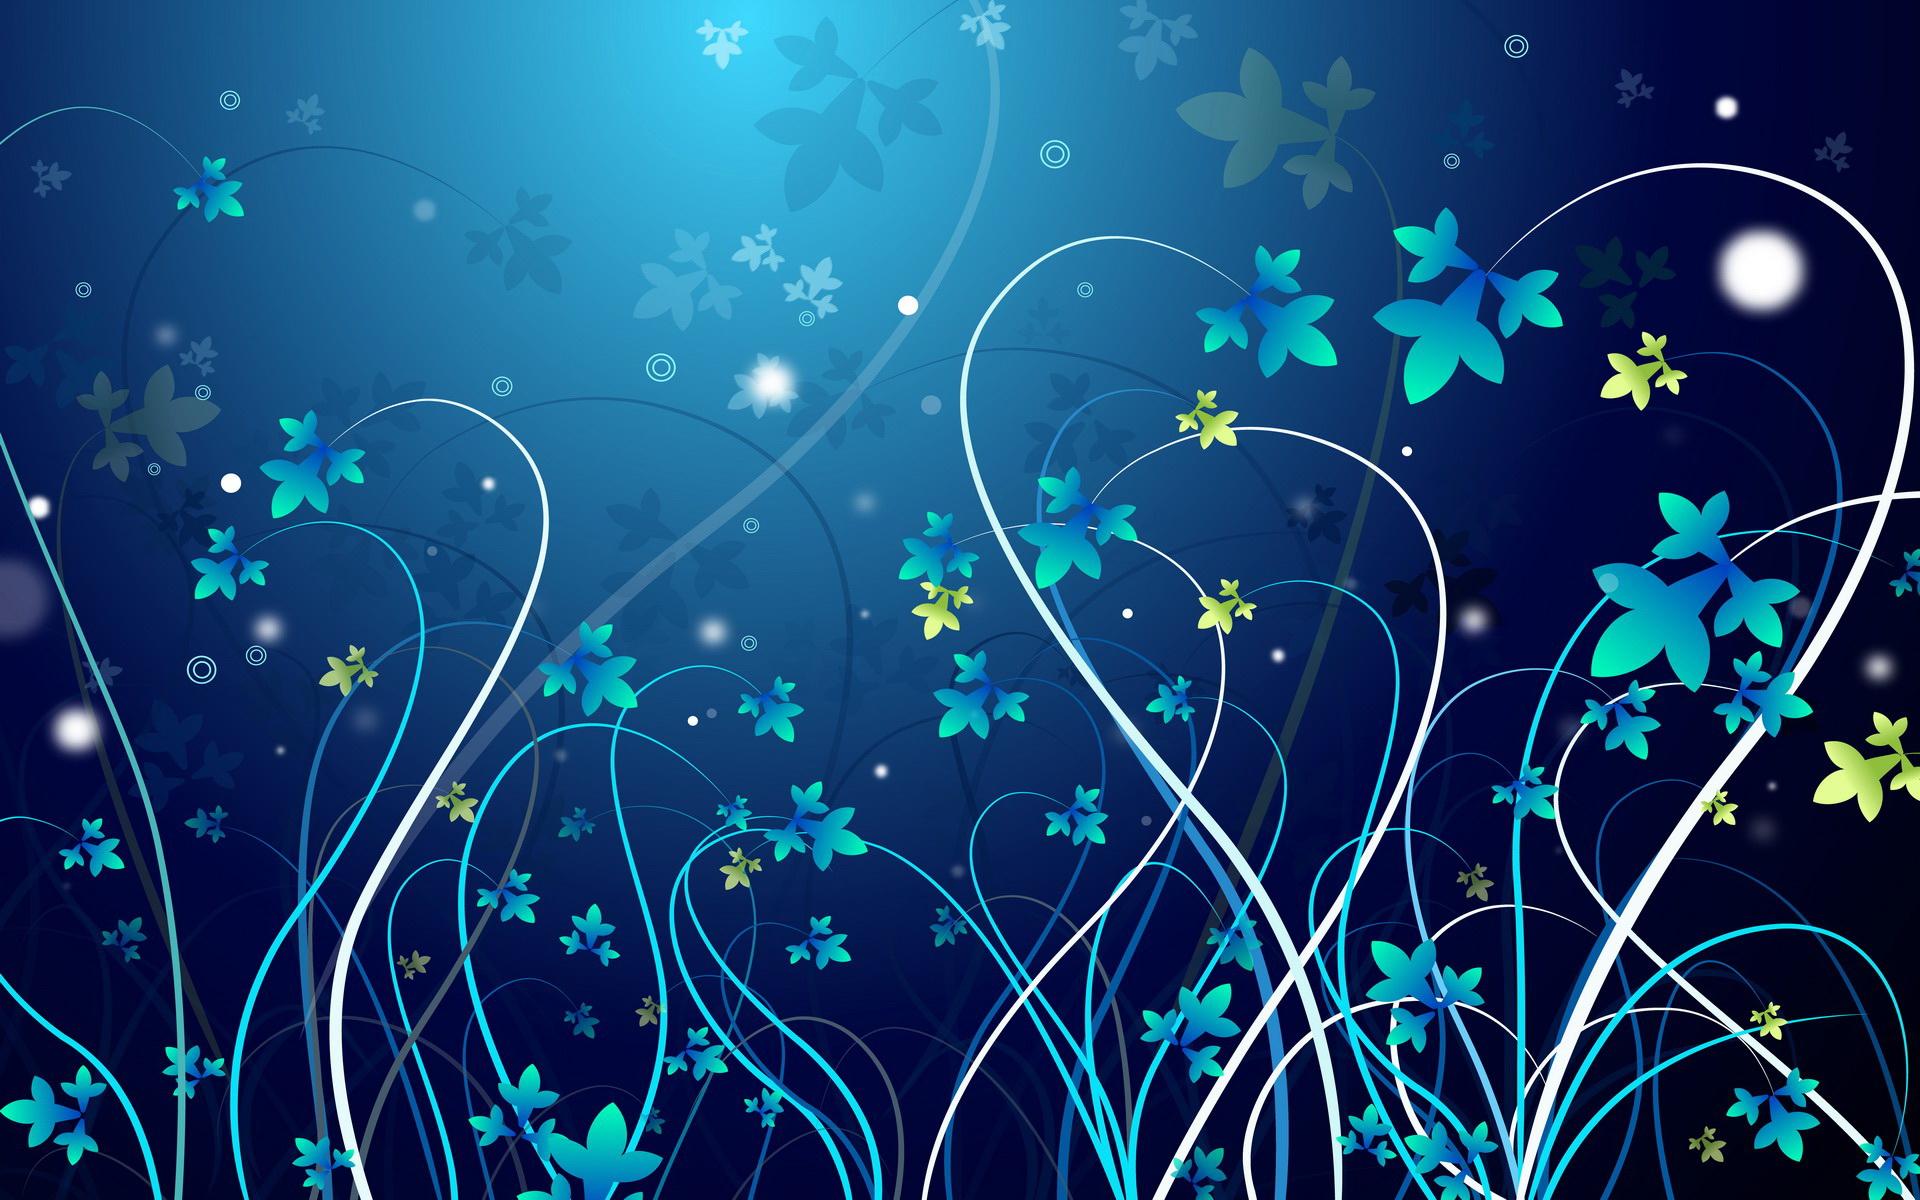 Blue Flower Desktop Wallpaper High Definition